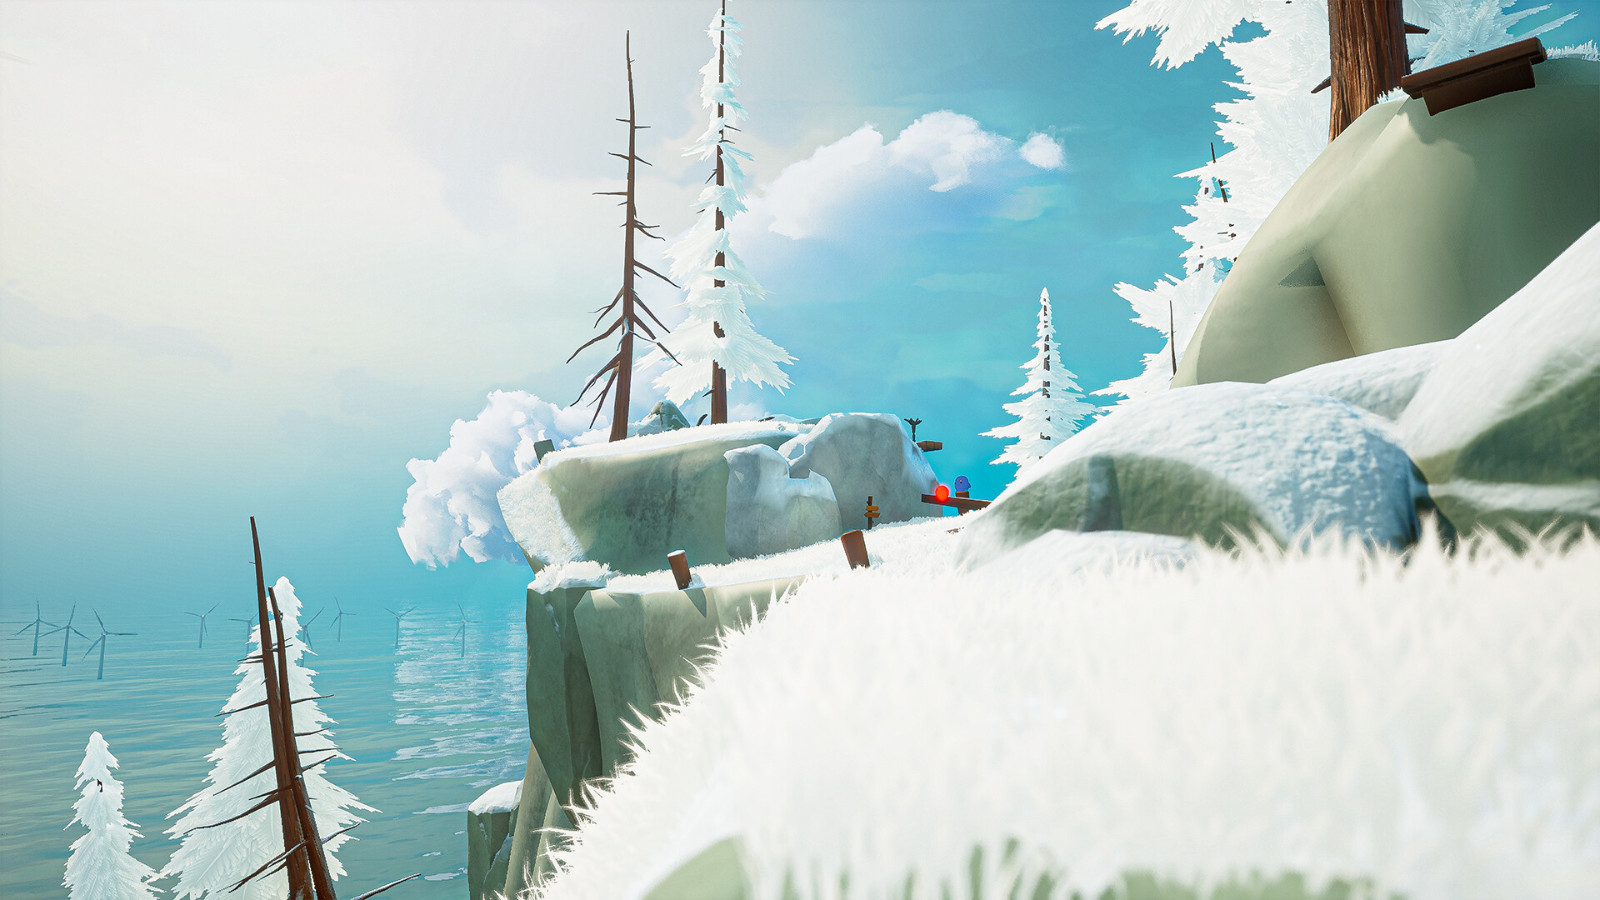 3D箱庭冒险解谜游戏 《喵之旅人》Steam页面上线